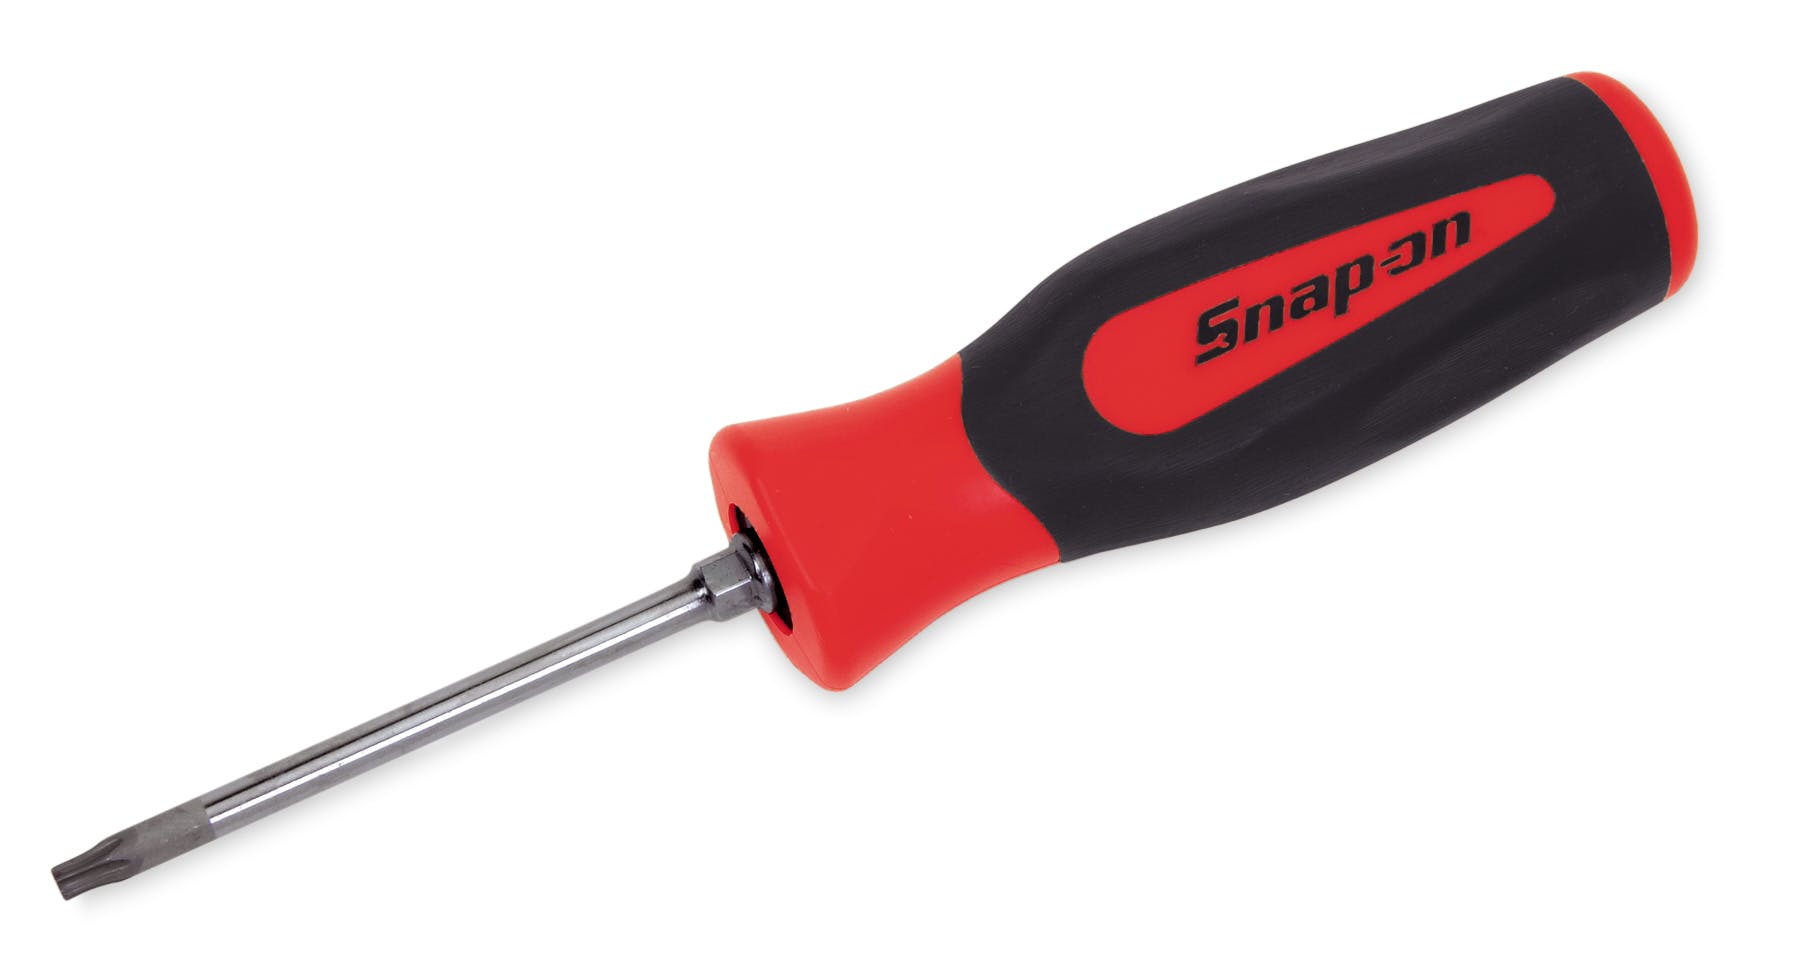 Snap-on Tools 4 pc Soft Grip Red Mini-tip Torx Screwdriver set T8 T20 NEW 2018 